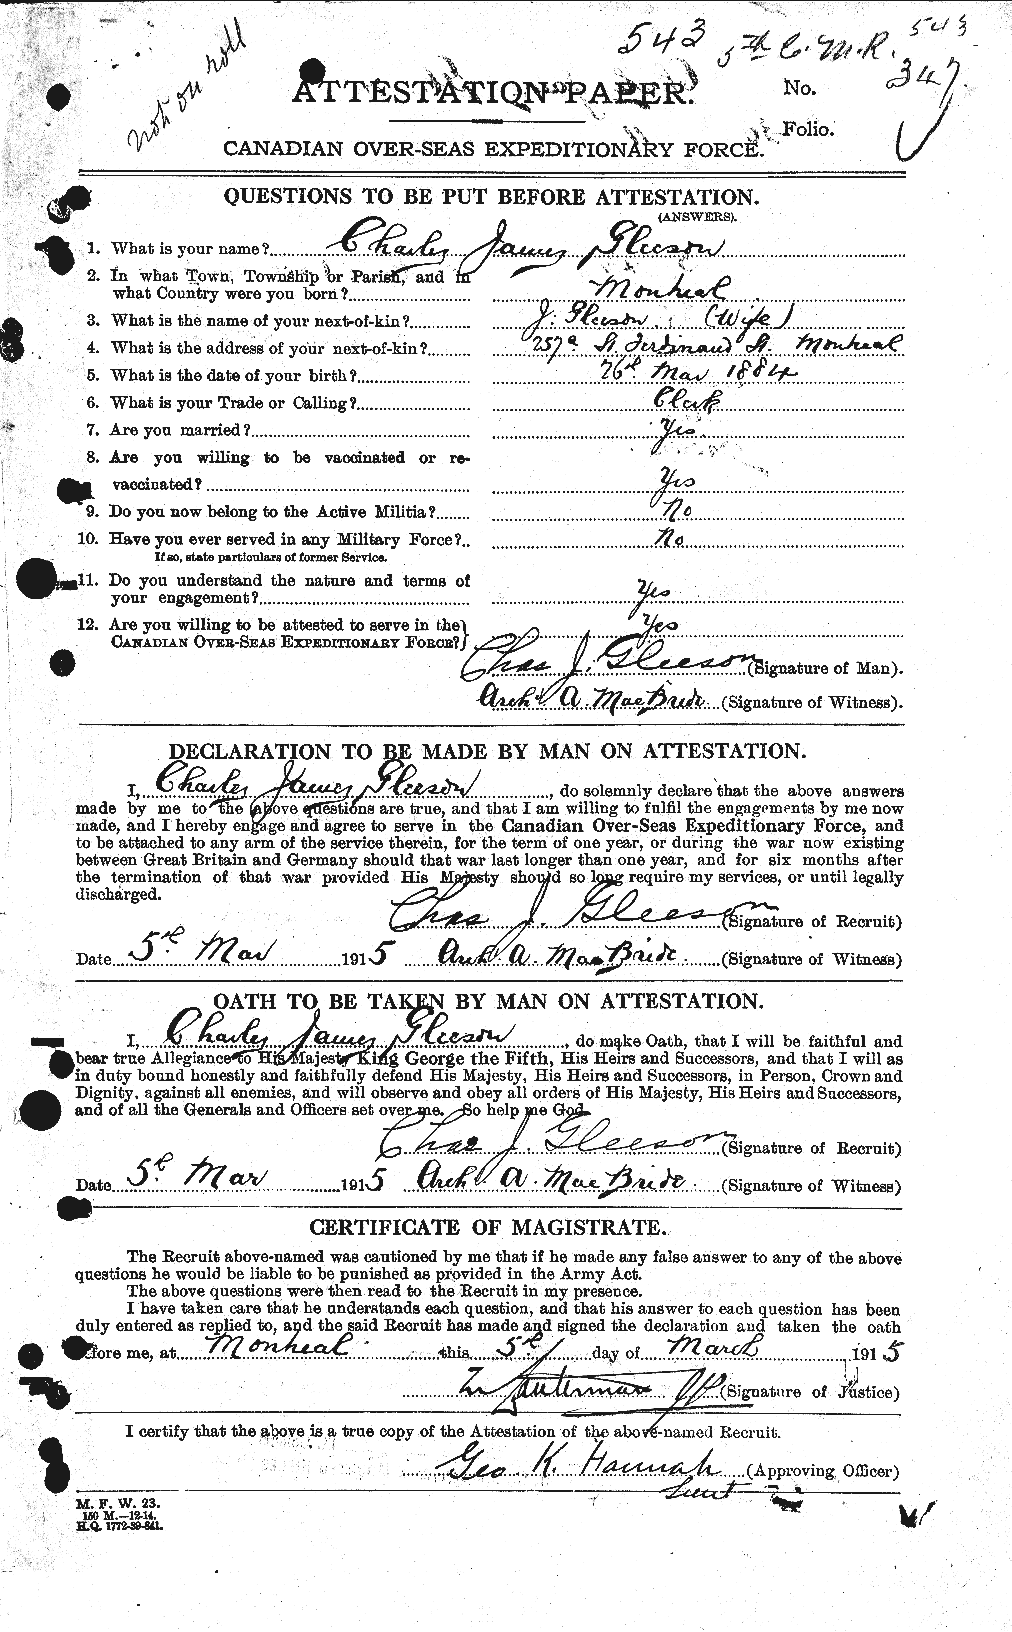 Dossiers du Personnel de la Première Guerre mondiale - CEC 352779a